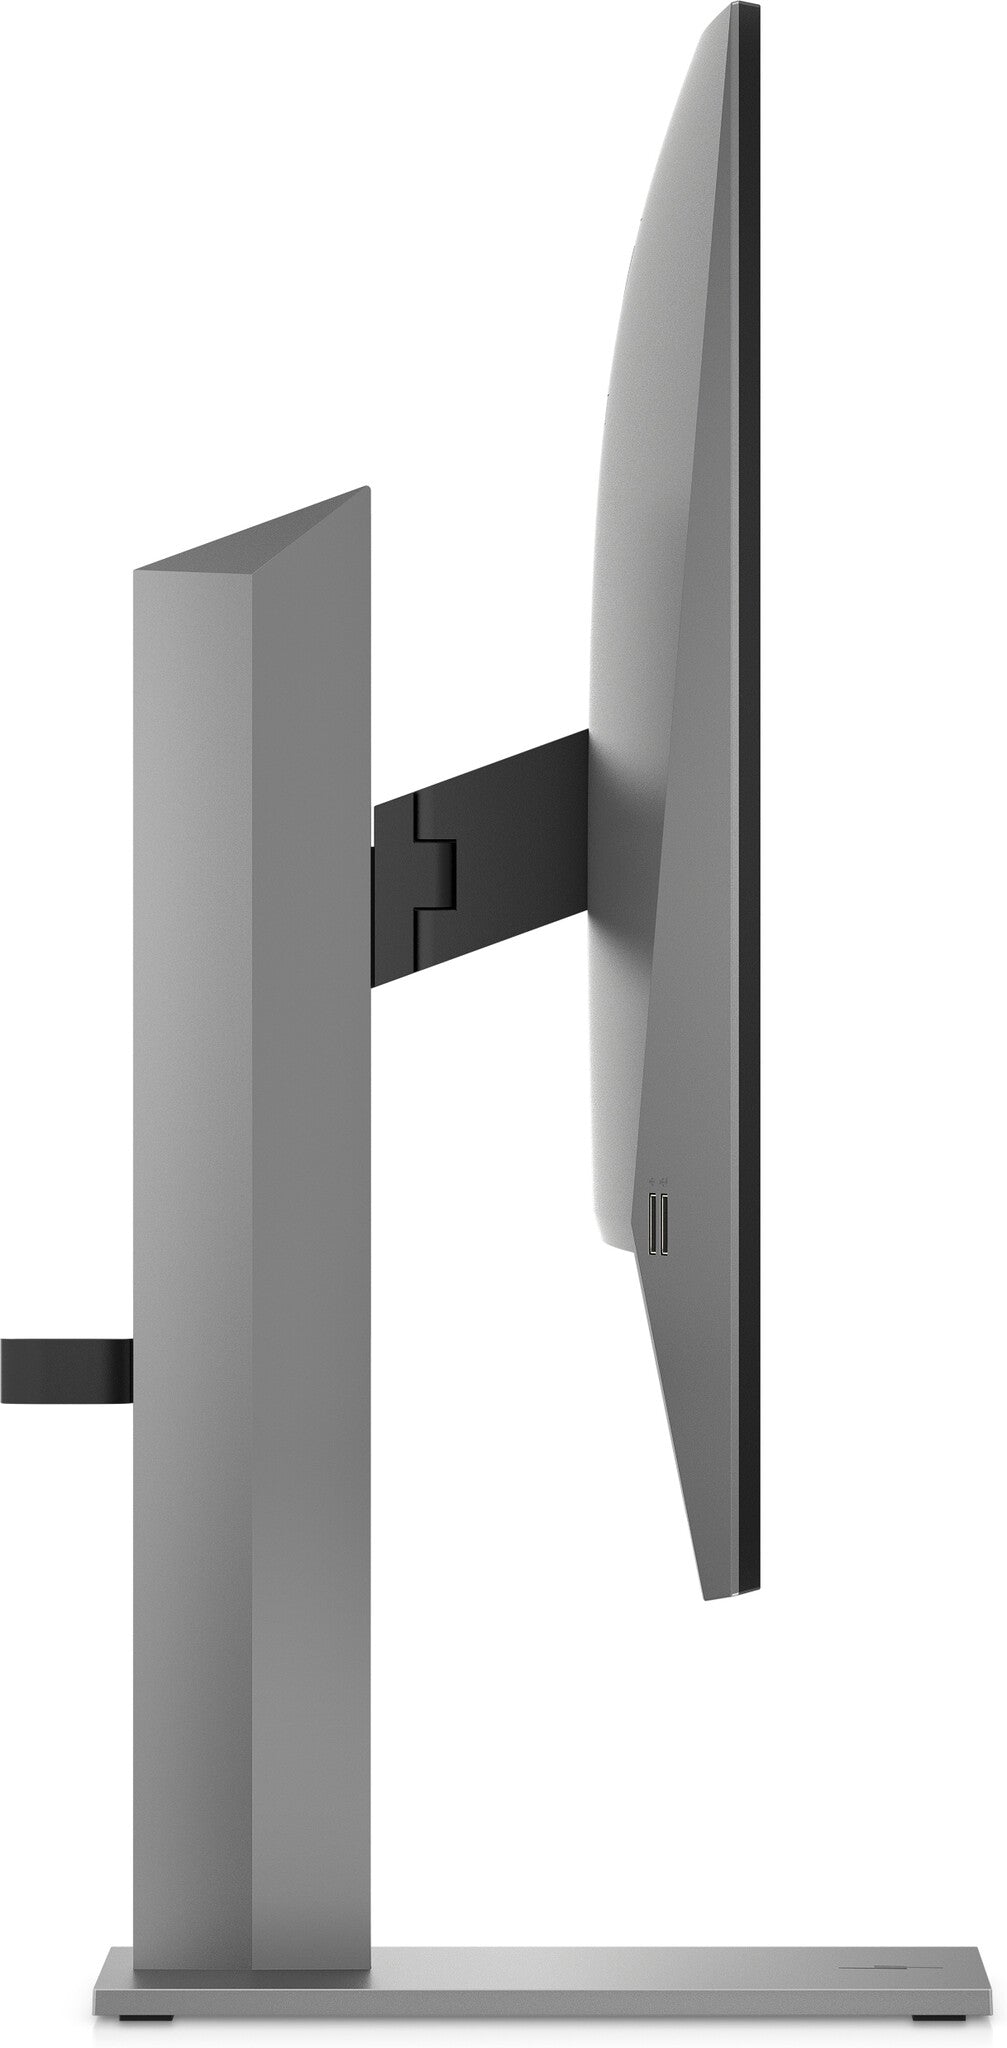 HP Z27q G3 QHD - 68.6 cm (27&quot;) - 2560 x 1440 pixels QHD Monitor